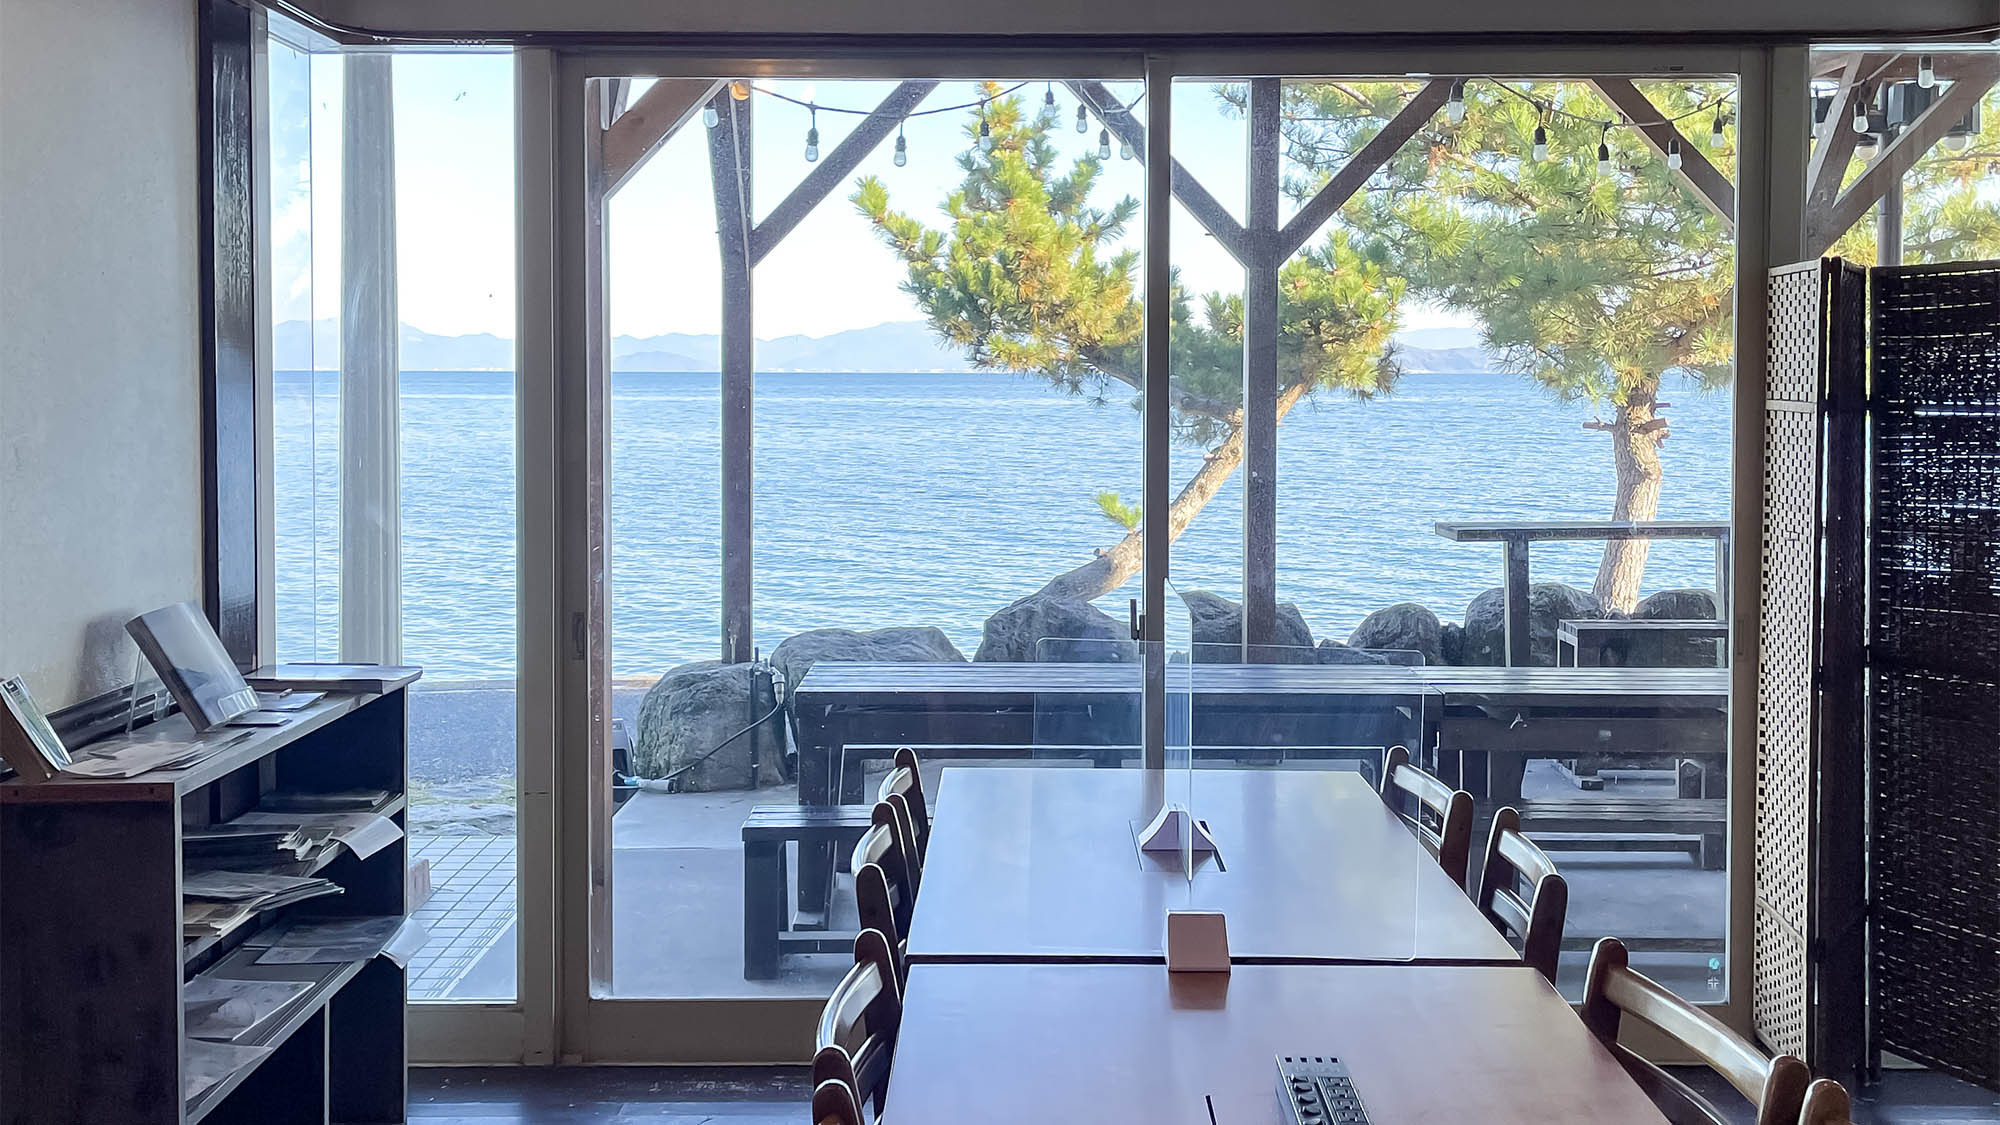 【無料朝食付】琵琶湖湖畔で迎える朝は景色を見ながらのんびりモーニング♪【絶品サンドイッチ】